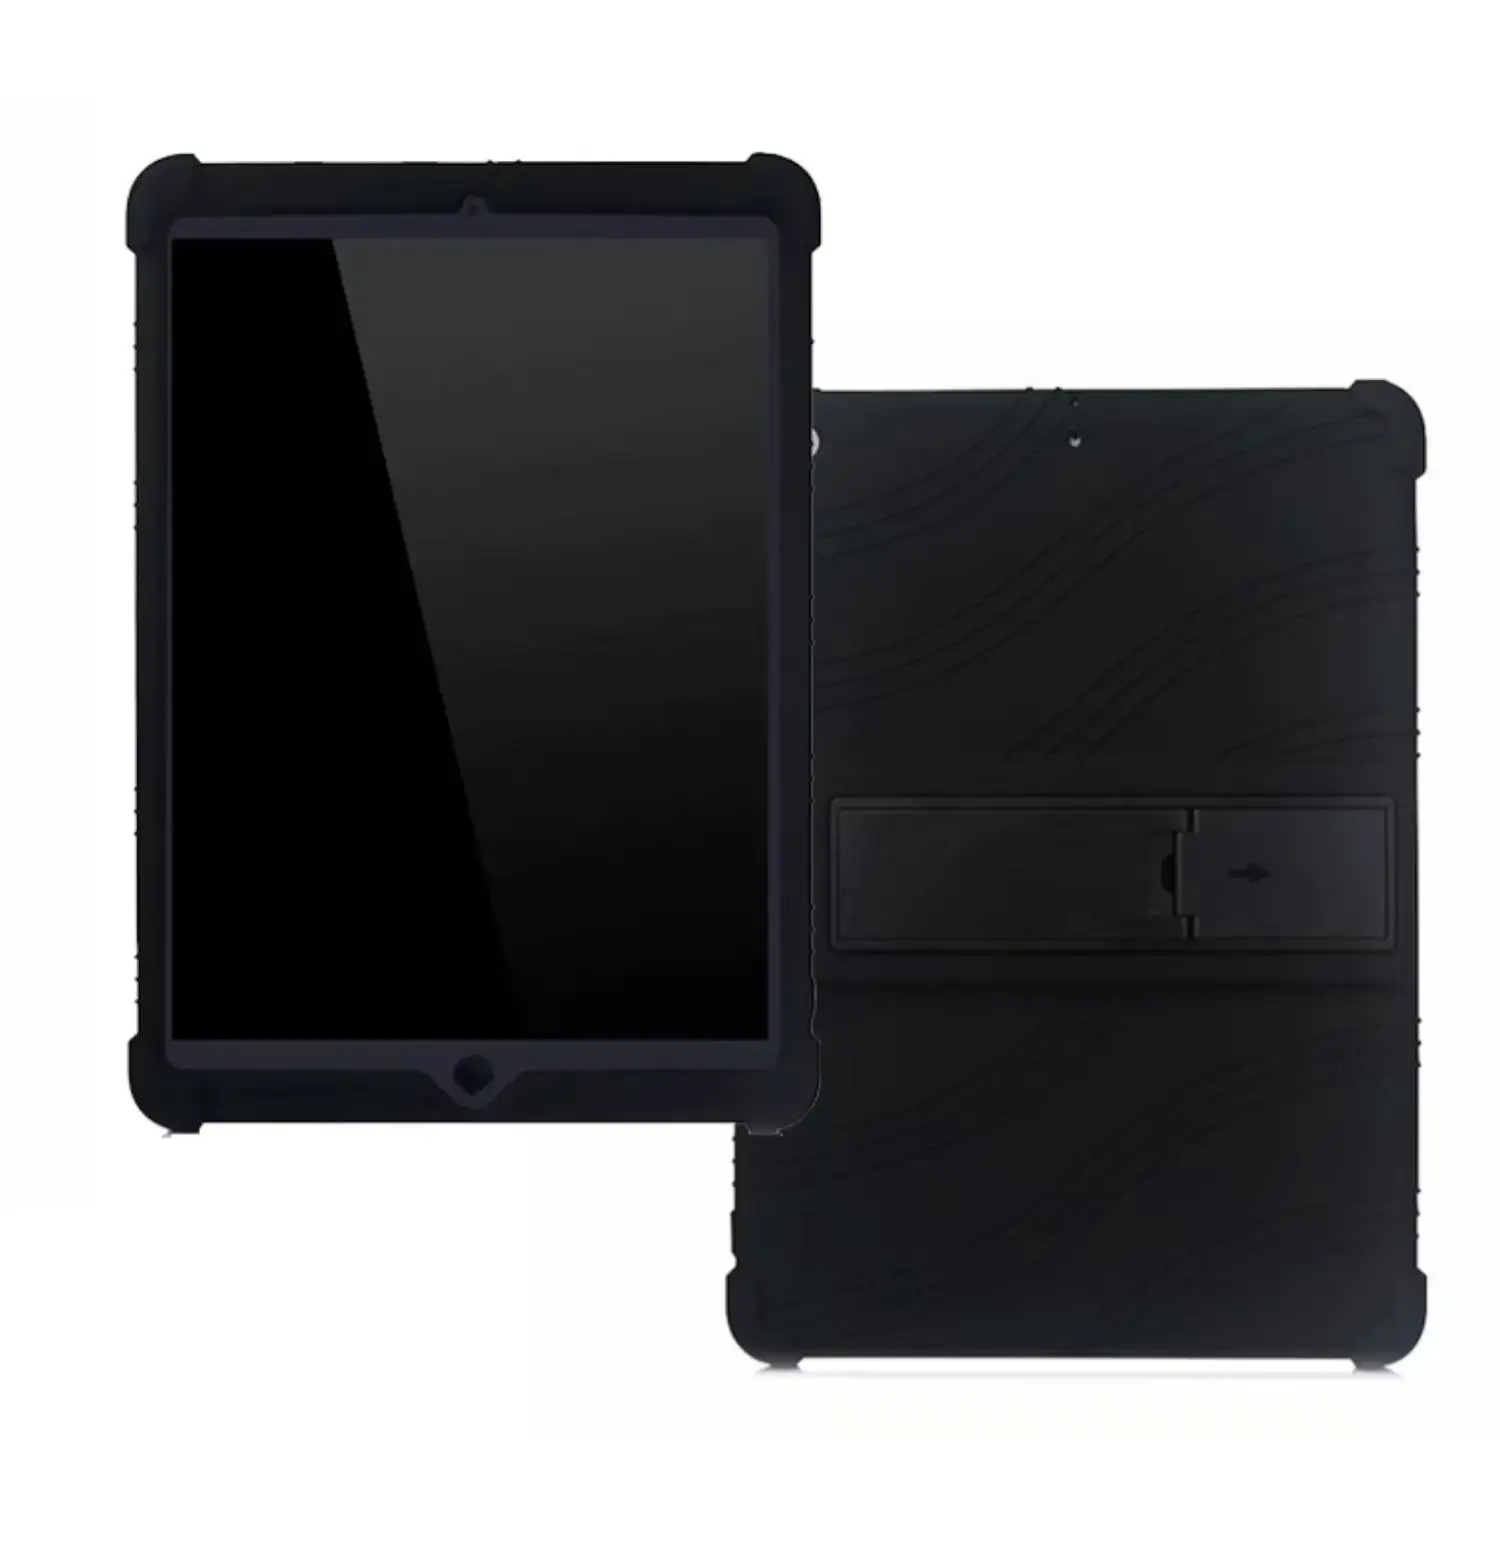 Casing berdiri silikon lembut Ultra tipis untuk Apple iPad Mini1/2/3 7.9 "dudukan Tablet penutup pelindung anak-anak